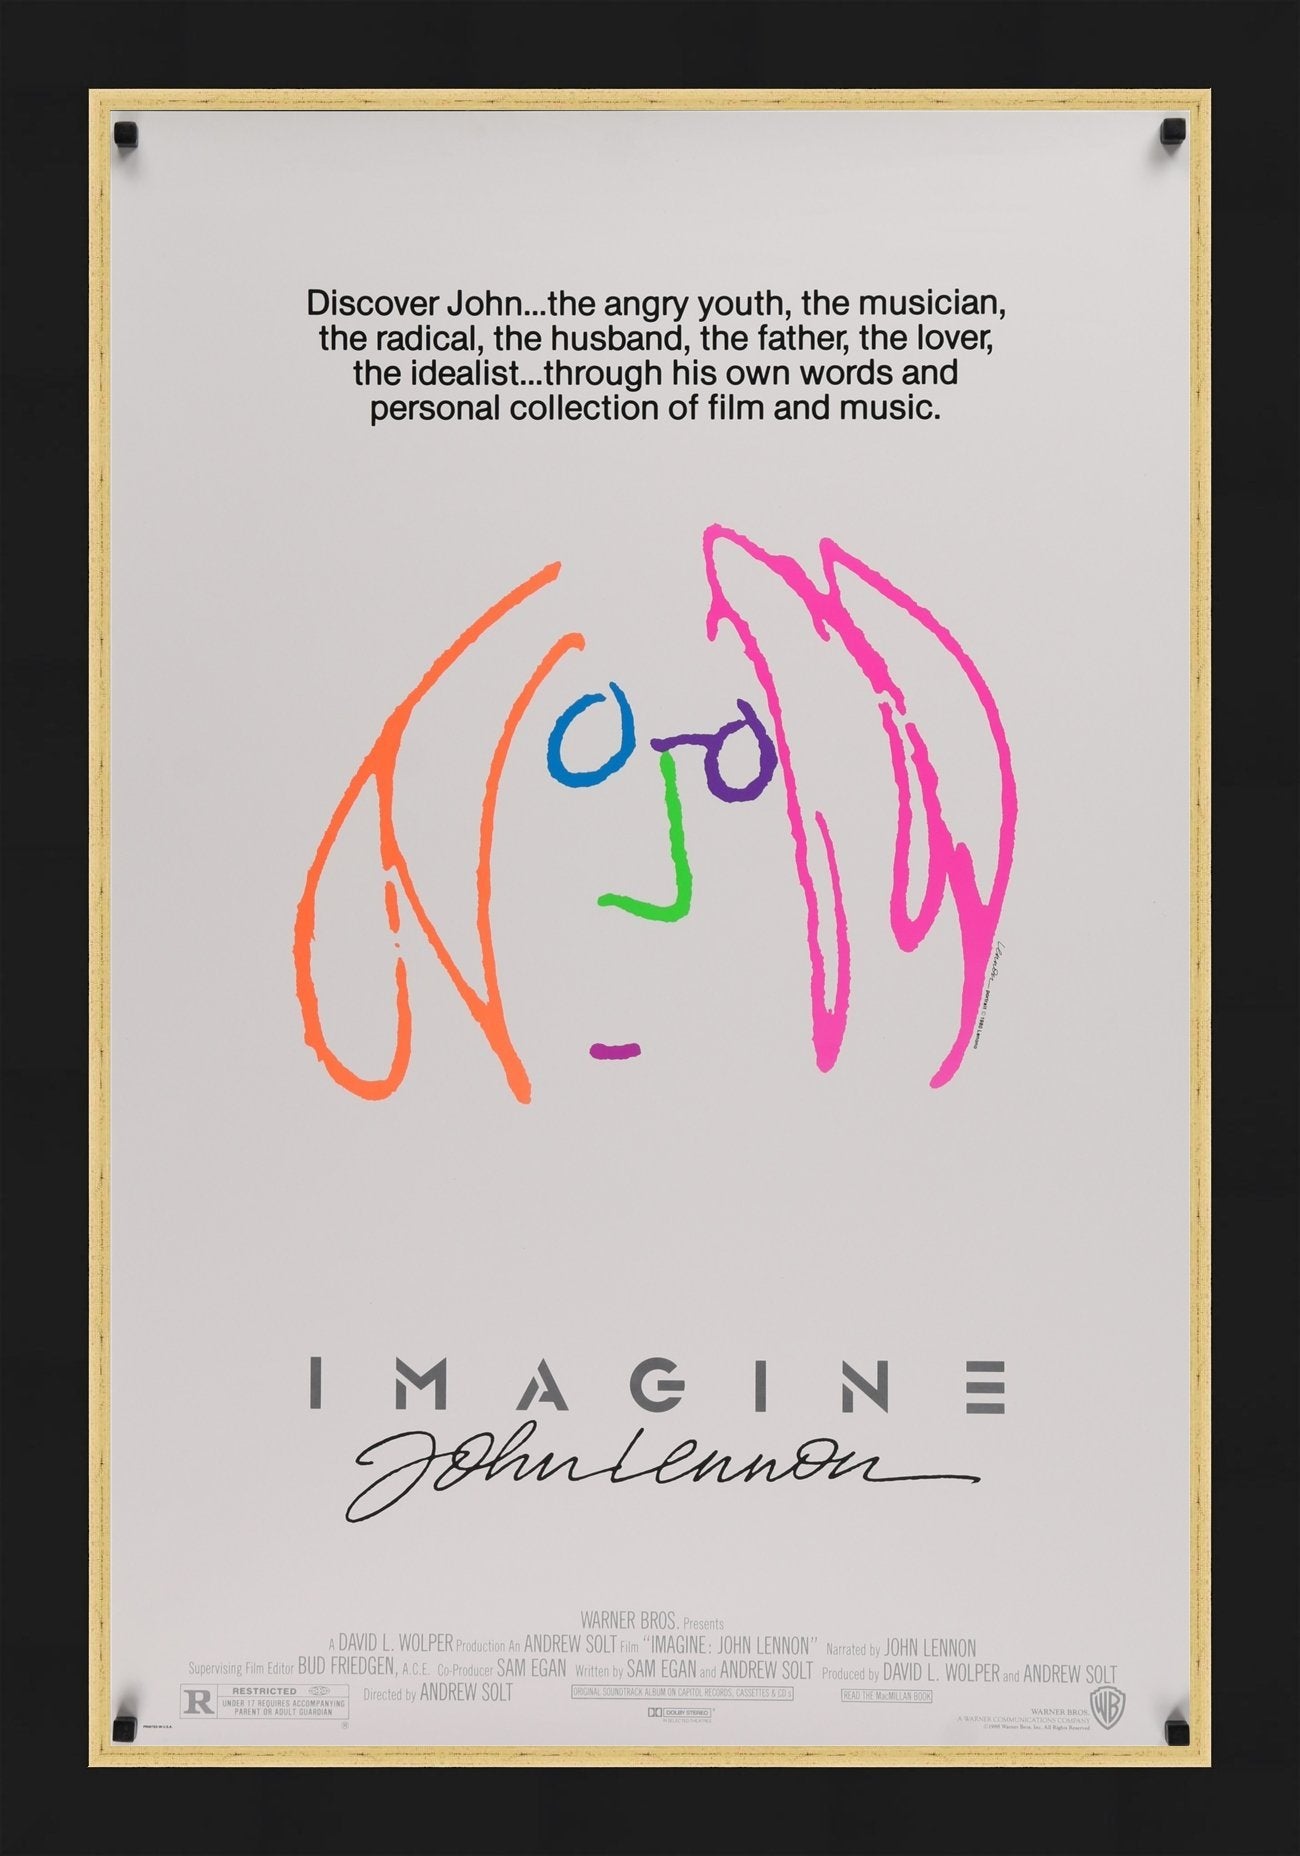 An original movie poster from the John Lennon film Imagine